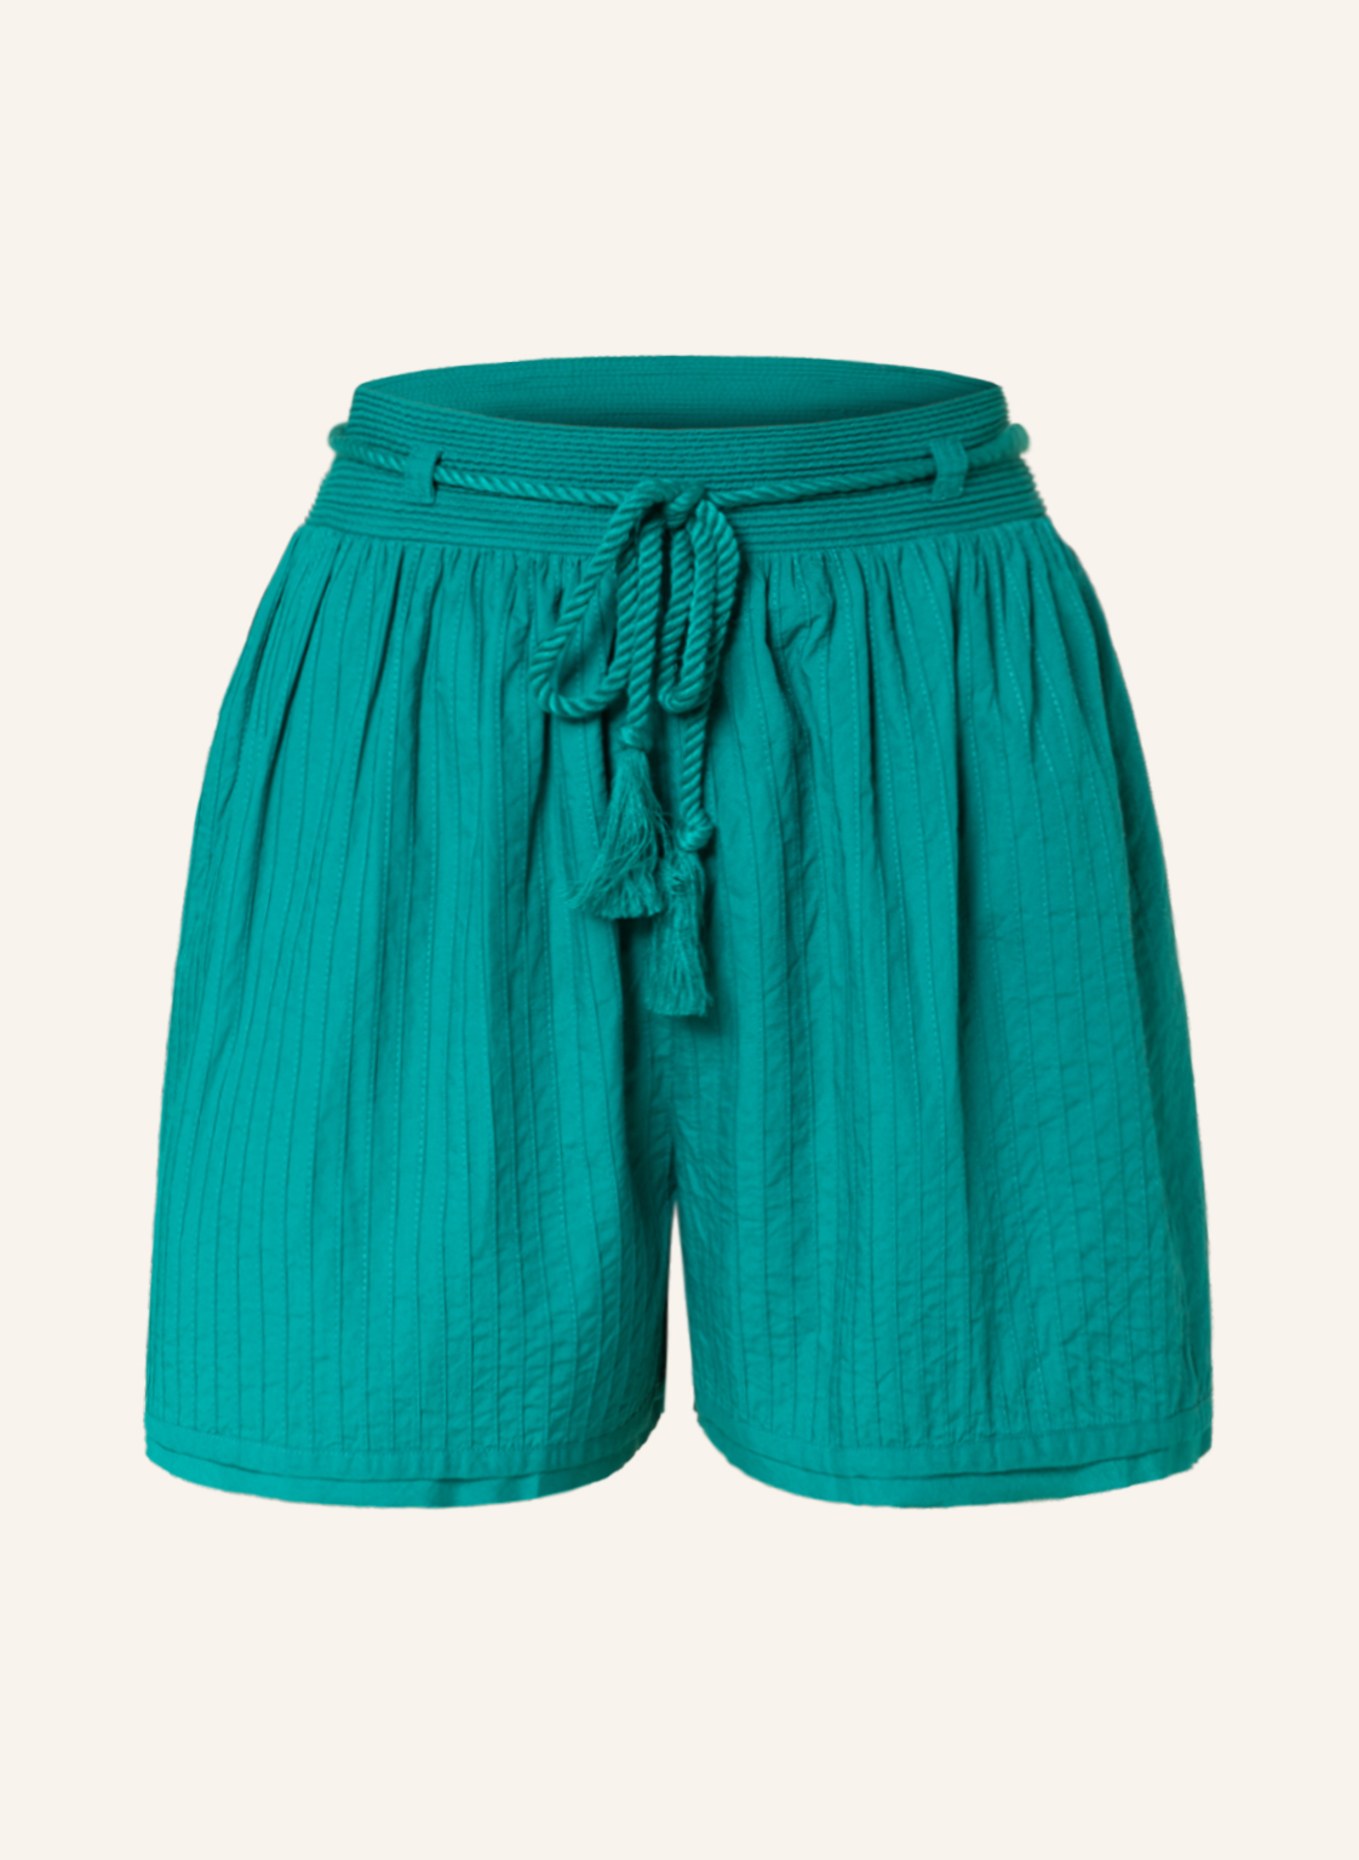 ULLA JOHNSON Shorts RINA, Farbe: GRÜN (Bild 1)